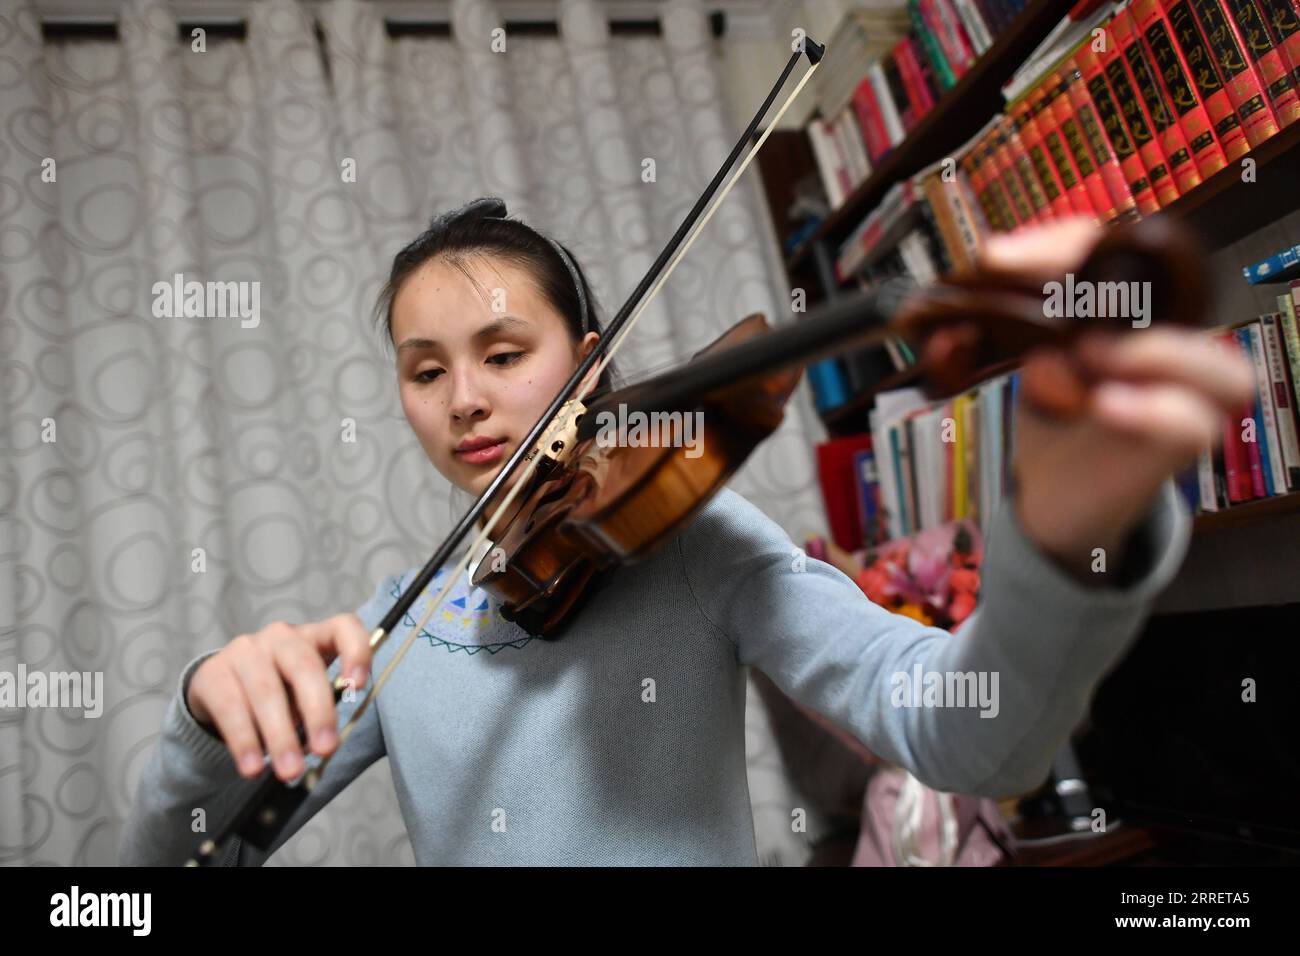 220316 -- YINCHUAN, 16. März 2022 -- Ma Yifei spielt das Lied Snowflake aus Peking 2022 auf ihrer Violine zu Hause in Yinchuan, Nordwestchinas Autonome Region Ningxia Hui, 14. März 2022. Für Ma Yifei, ein 16-jähriges sehbehindertes Mädchen, ist das Geigenstück des Pekinger 2022-Themensängs Snowflake, das sie bei der Abschlusszeremonie der Paralympischen Winterspiele 2022 in Peking spielte, ihr bestes Geschenk für Paralympians auf der ganzen Welt. MA, eine zweite Studentin an der Ningxia Special Education High School in der Autonomen Region Ningxia Hui im Nordwesten Chinas, verlor im Alter von zwei Jahren ihr Augenlicht durch illne Stockfoto